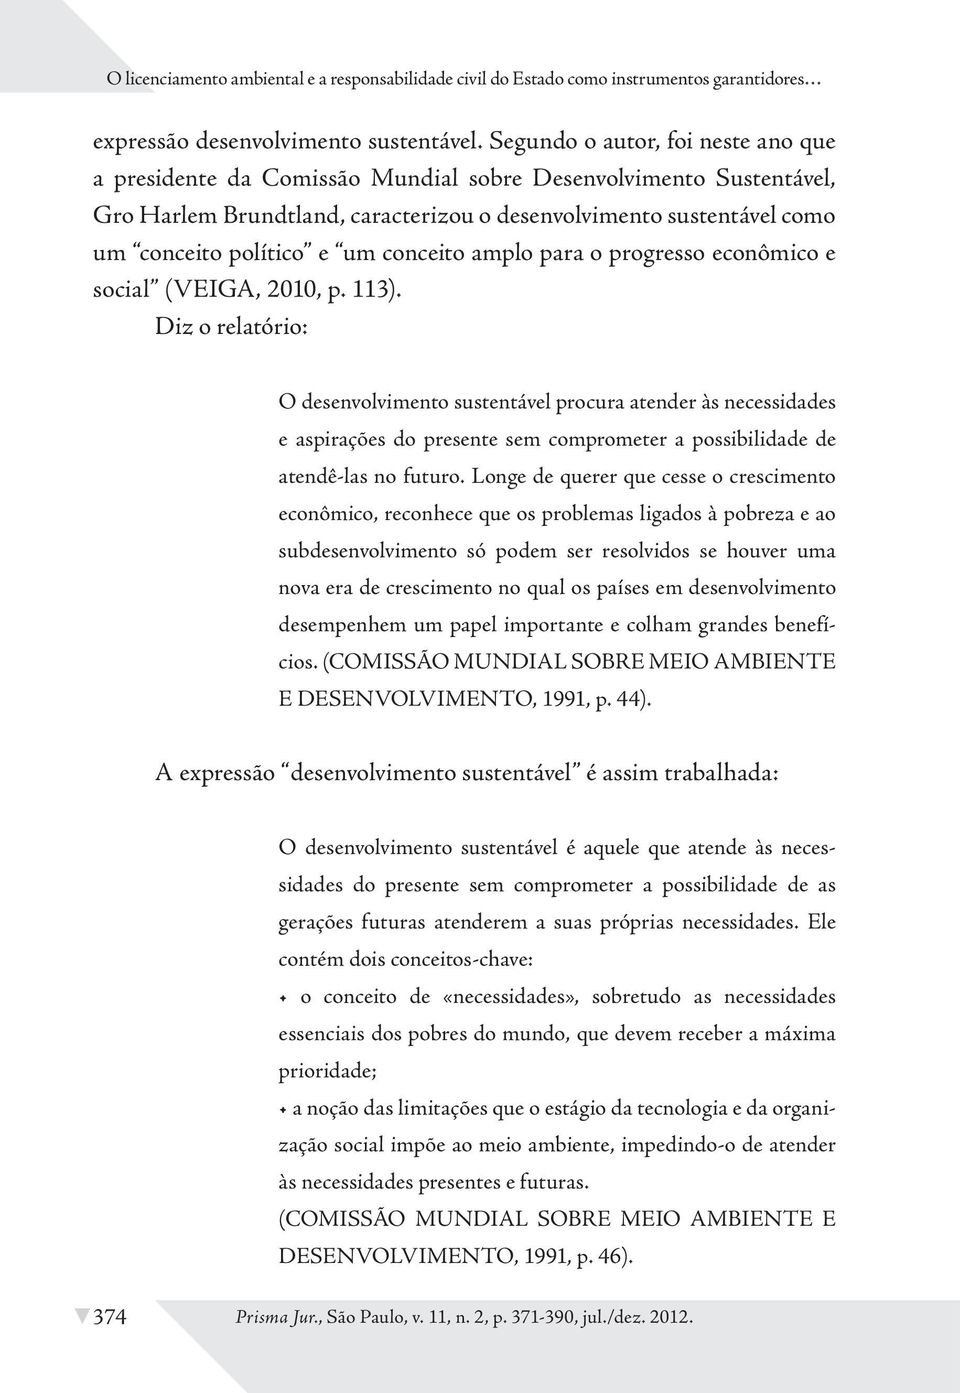 conceito amplo para o progresso econômico e social (VEIGA, 2010, p. 113).